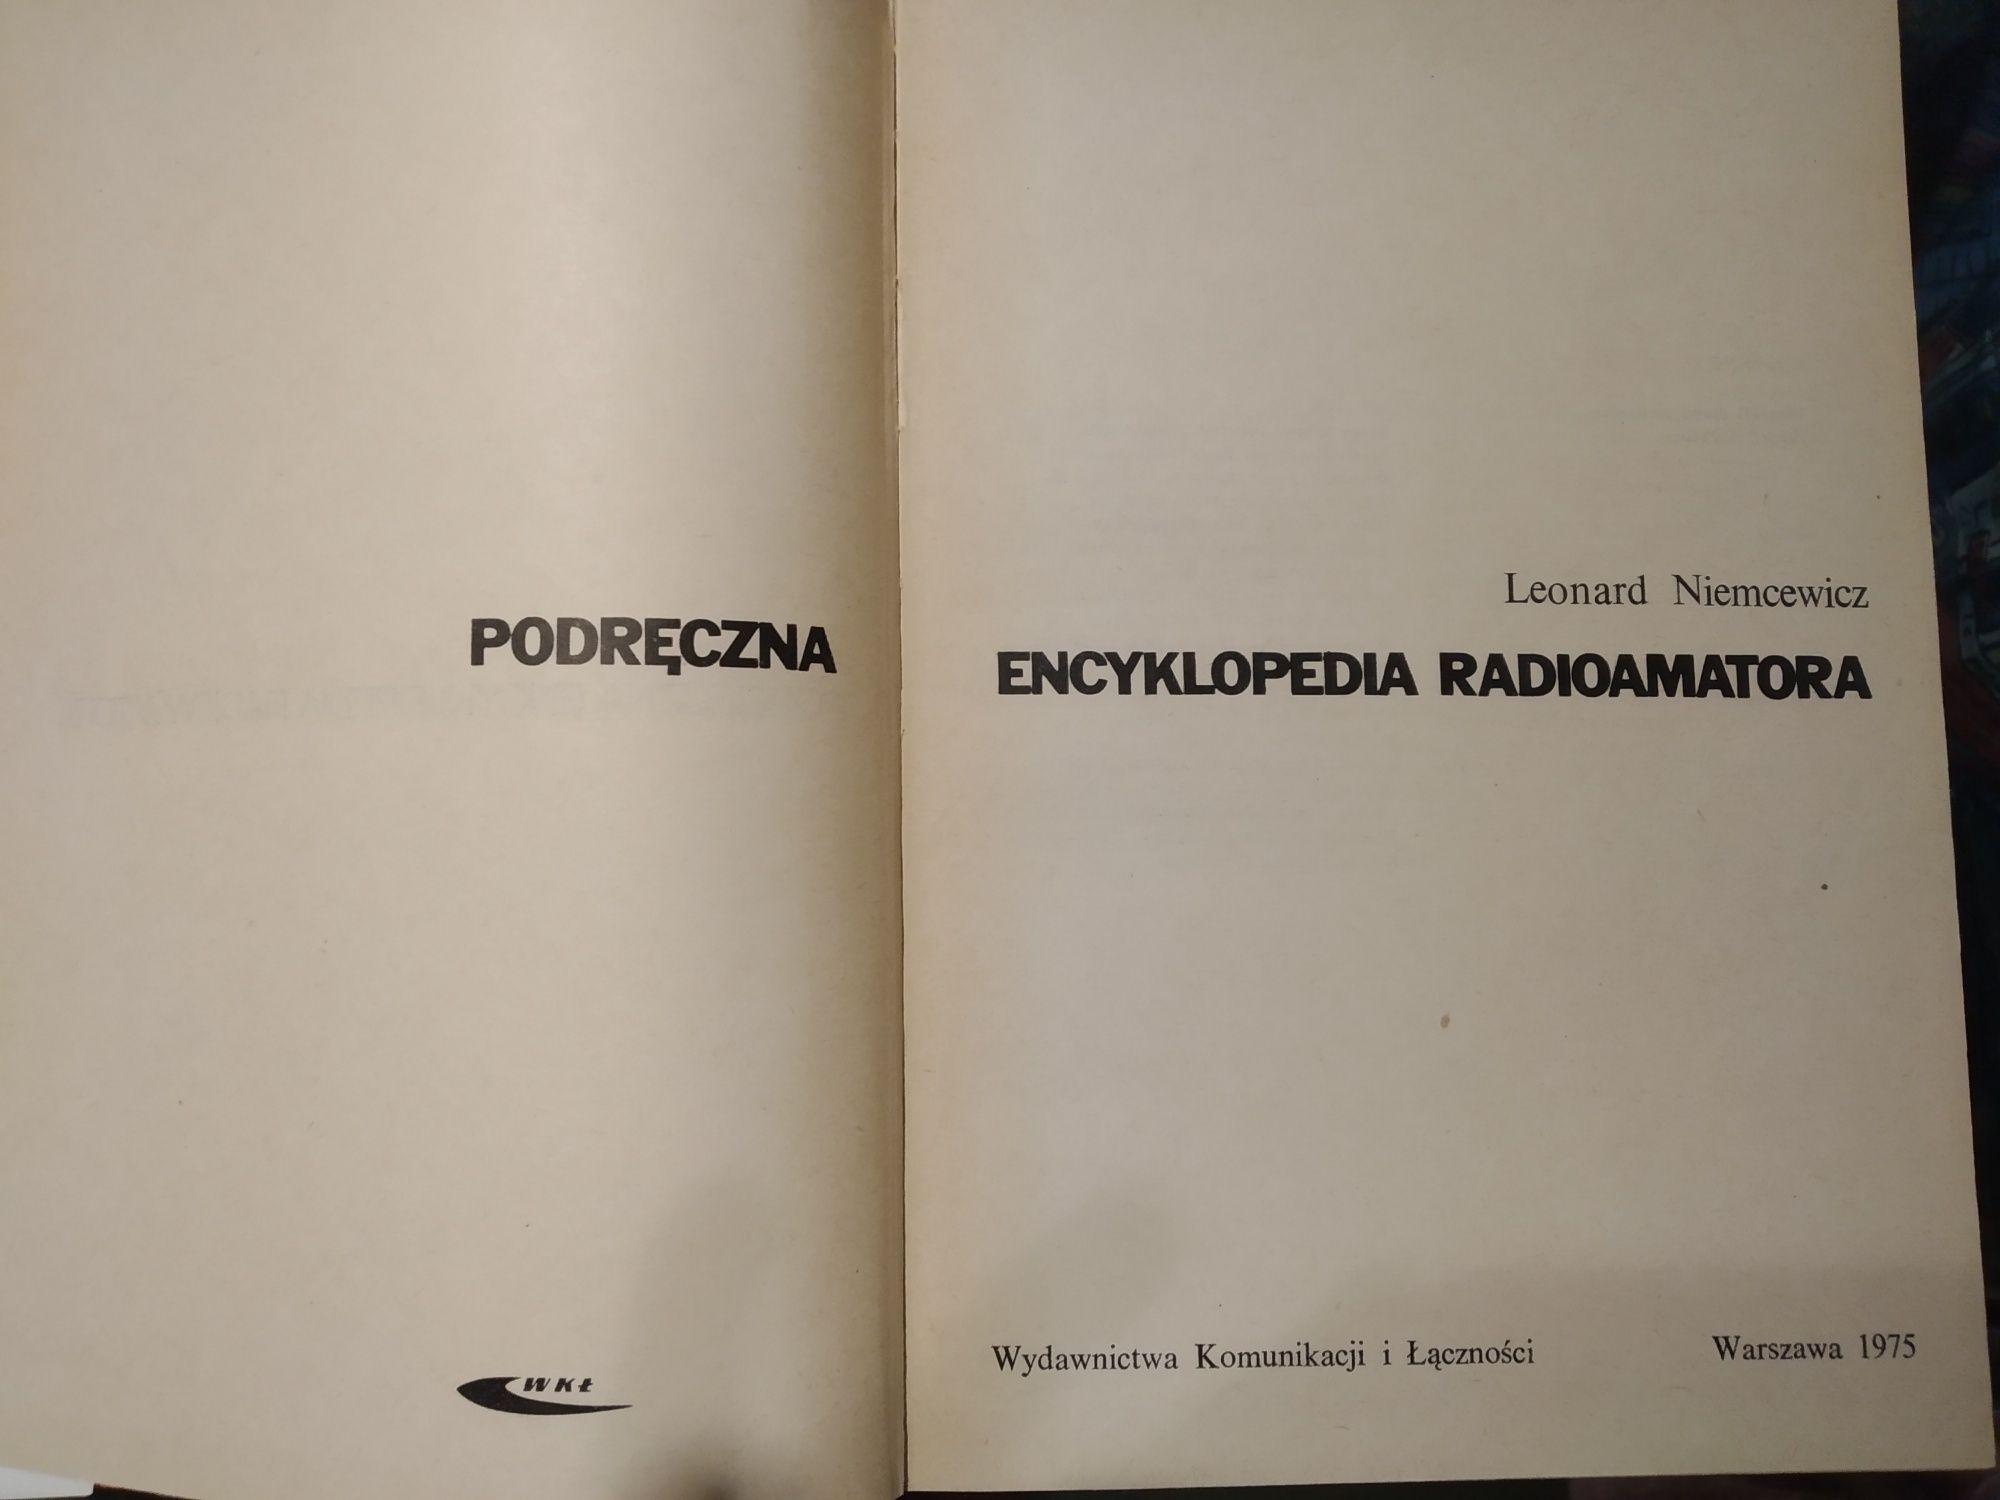 Podręczna encyklopedia radioamatora